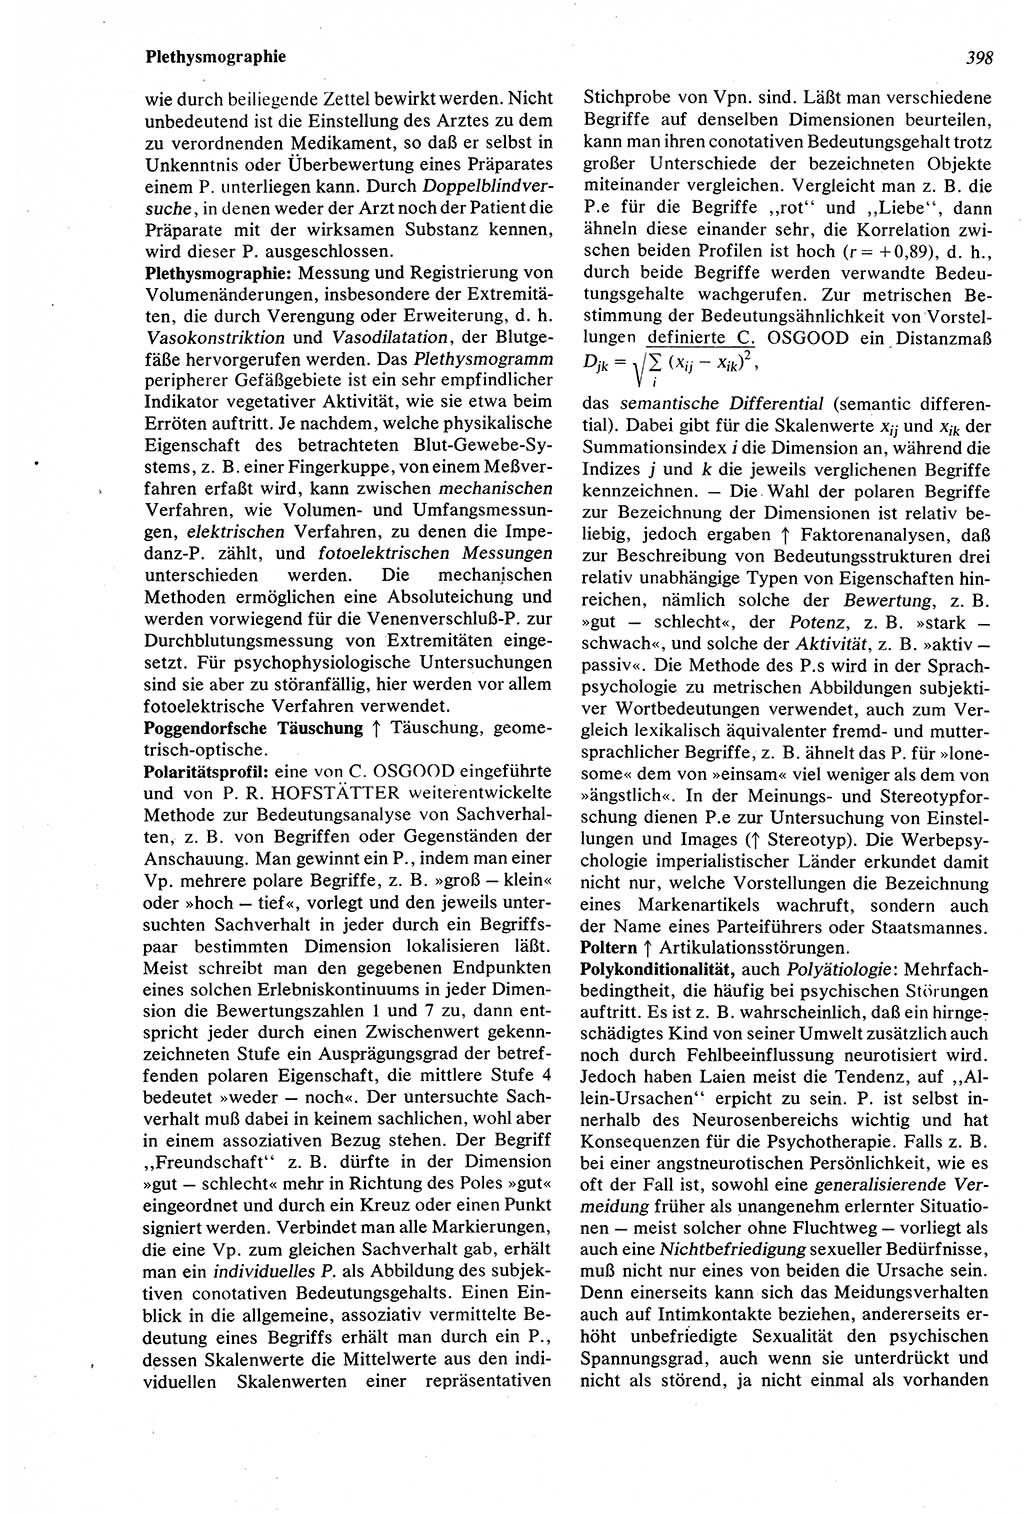 Wörterbuch der Psychologie [Deutsche Demokratische Republik (DDR)] 1976, Seite 398 (Wb. Psych. DDR 1976, S. 398)